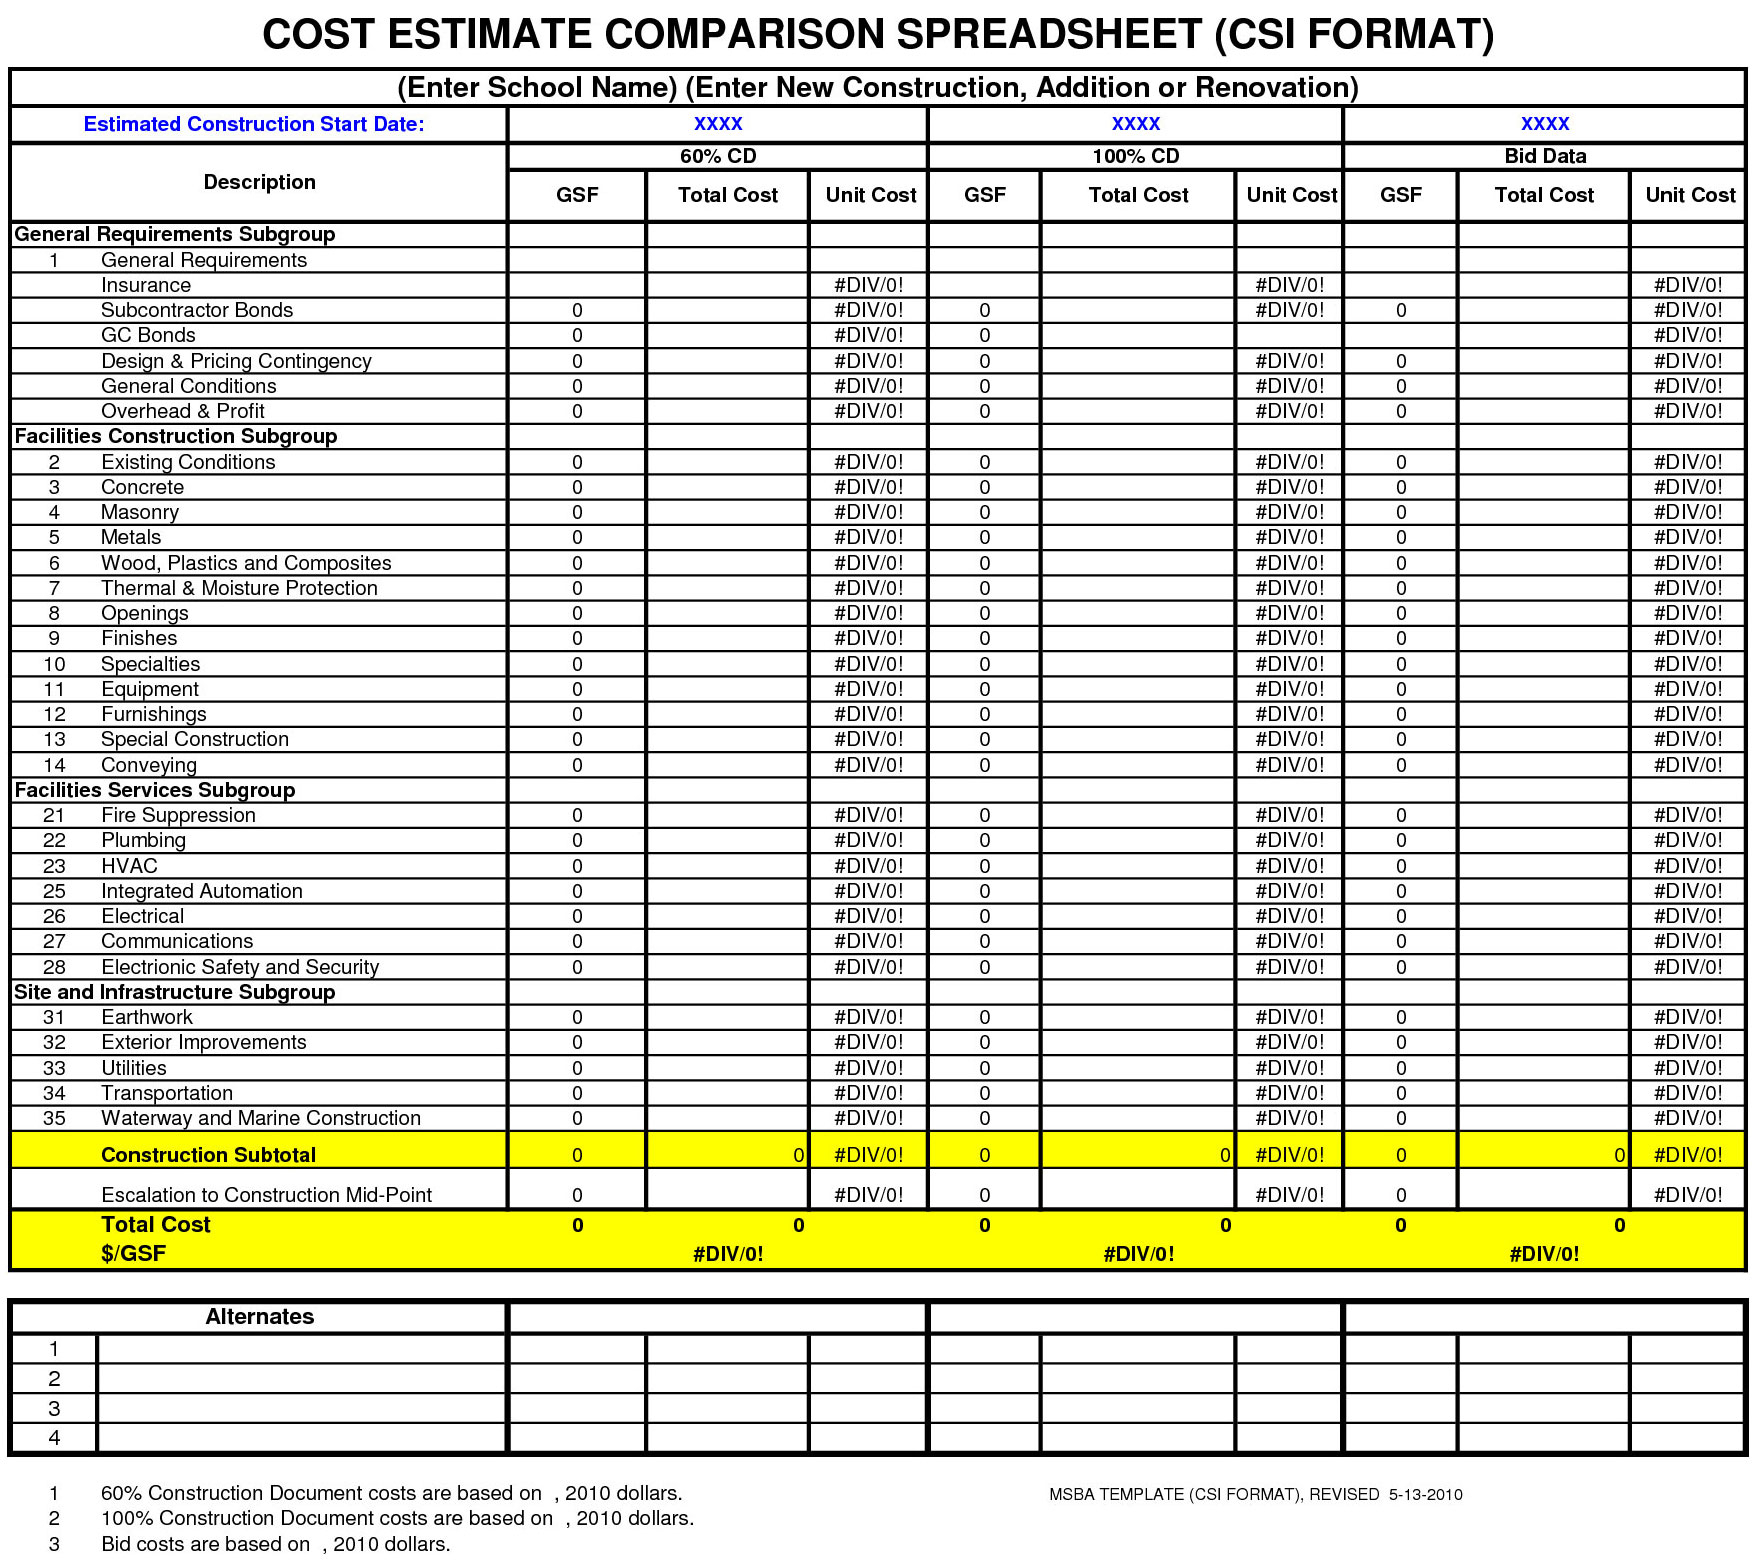 Cost Comparison Spreadsheet With Cost Estimate Comparison Spreadsheet  Free Download Cost Estimator